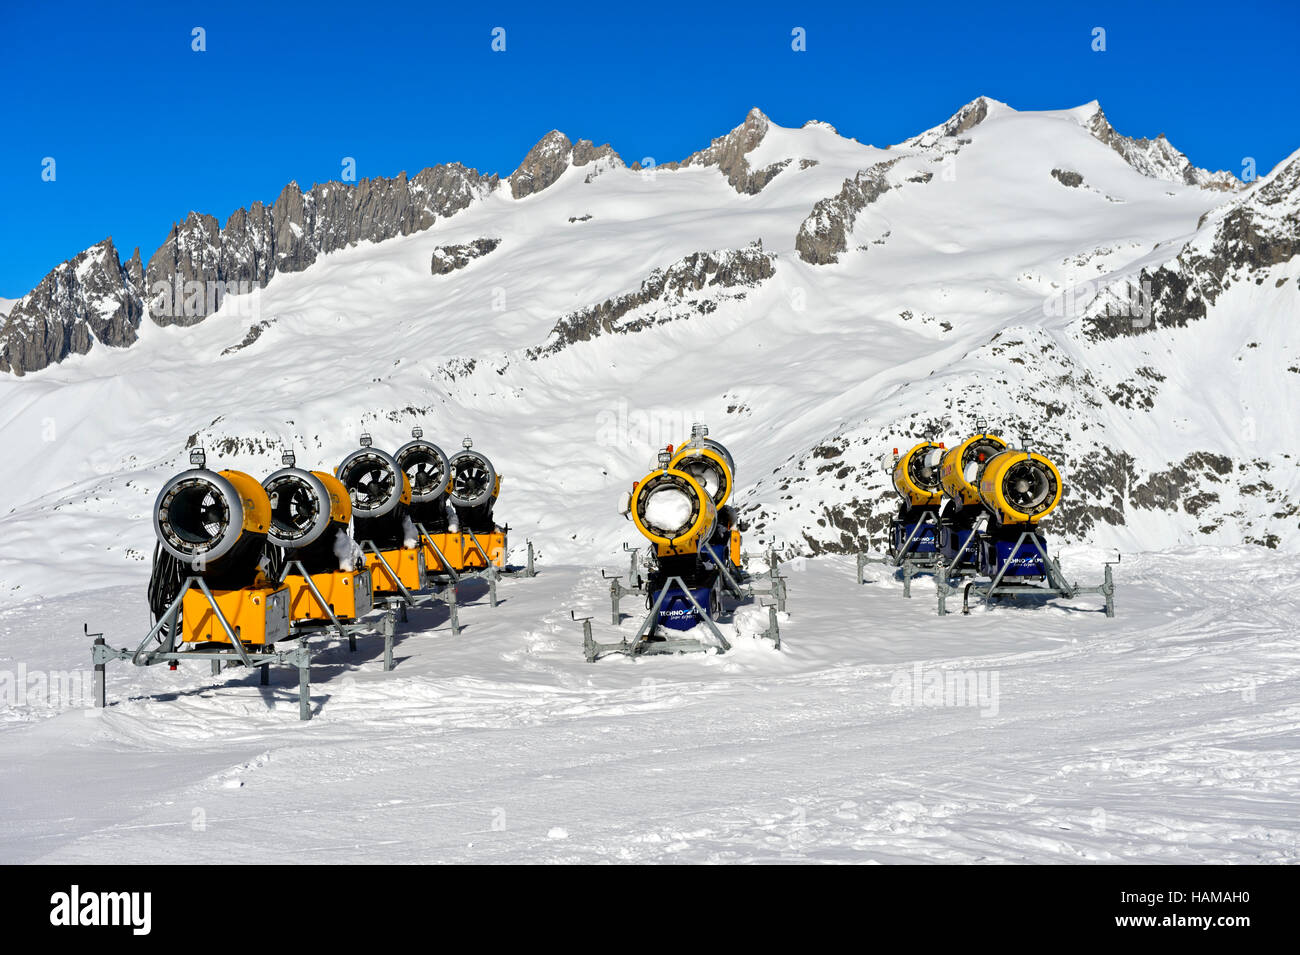 Cannoni da neve sulla pista da sci, Aletsch Arena ski resort, Bettmeralp, il Cantone del Vallese, Svizzera Foto Stock